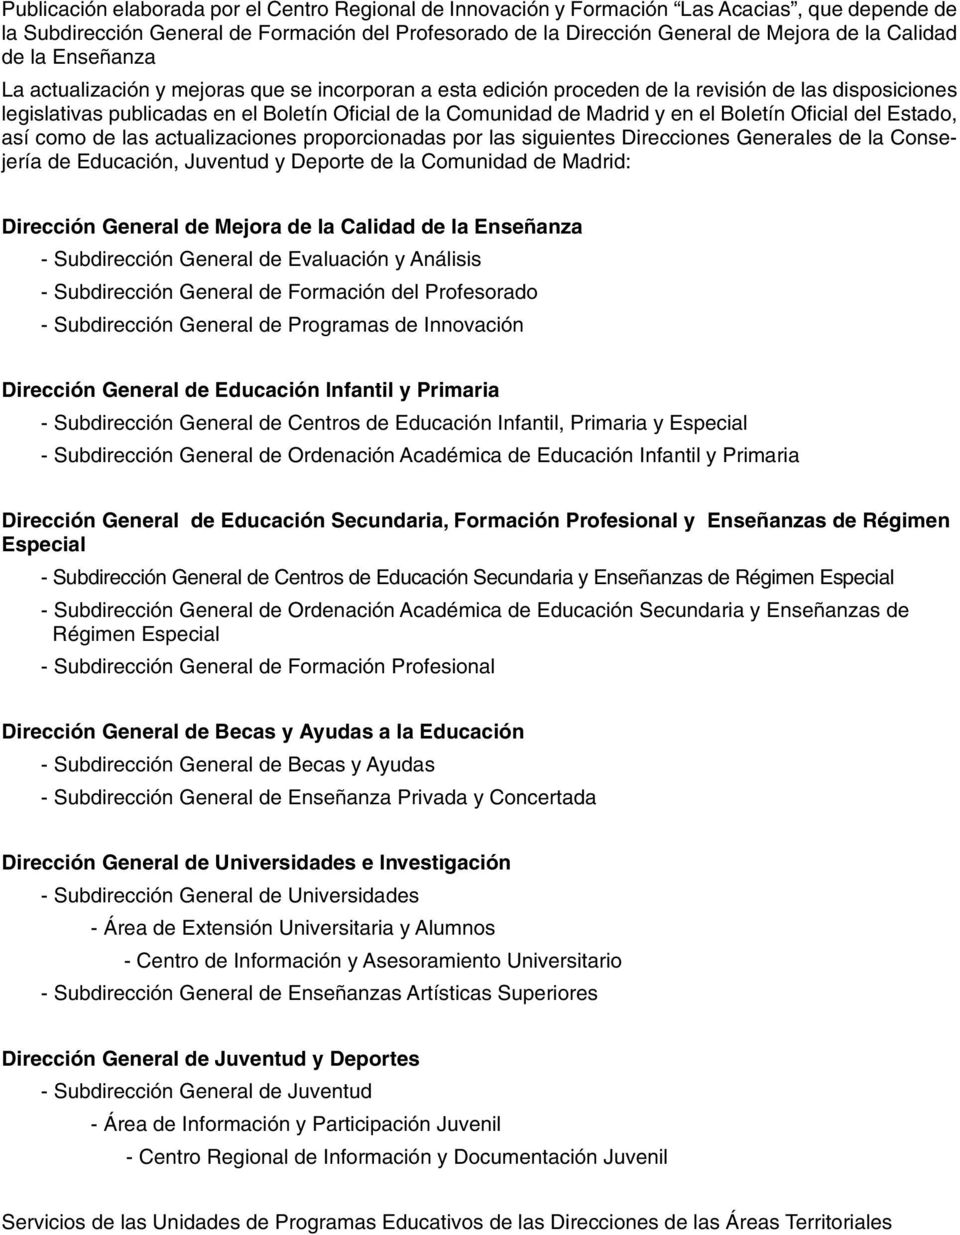 el Boletín Oficial del Estado, así como de las actualizaciones proporcionadas por las siguientes Direcciones Generales de la Consejería de Educación, Juventud y Deporte de la Comunidad de Madrid: